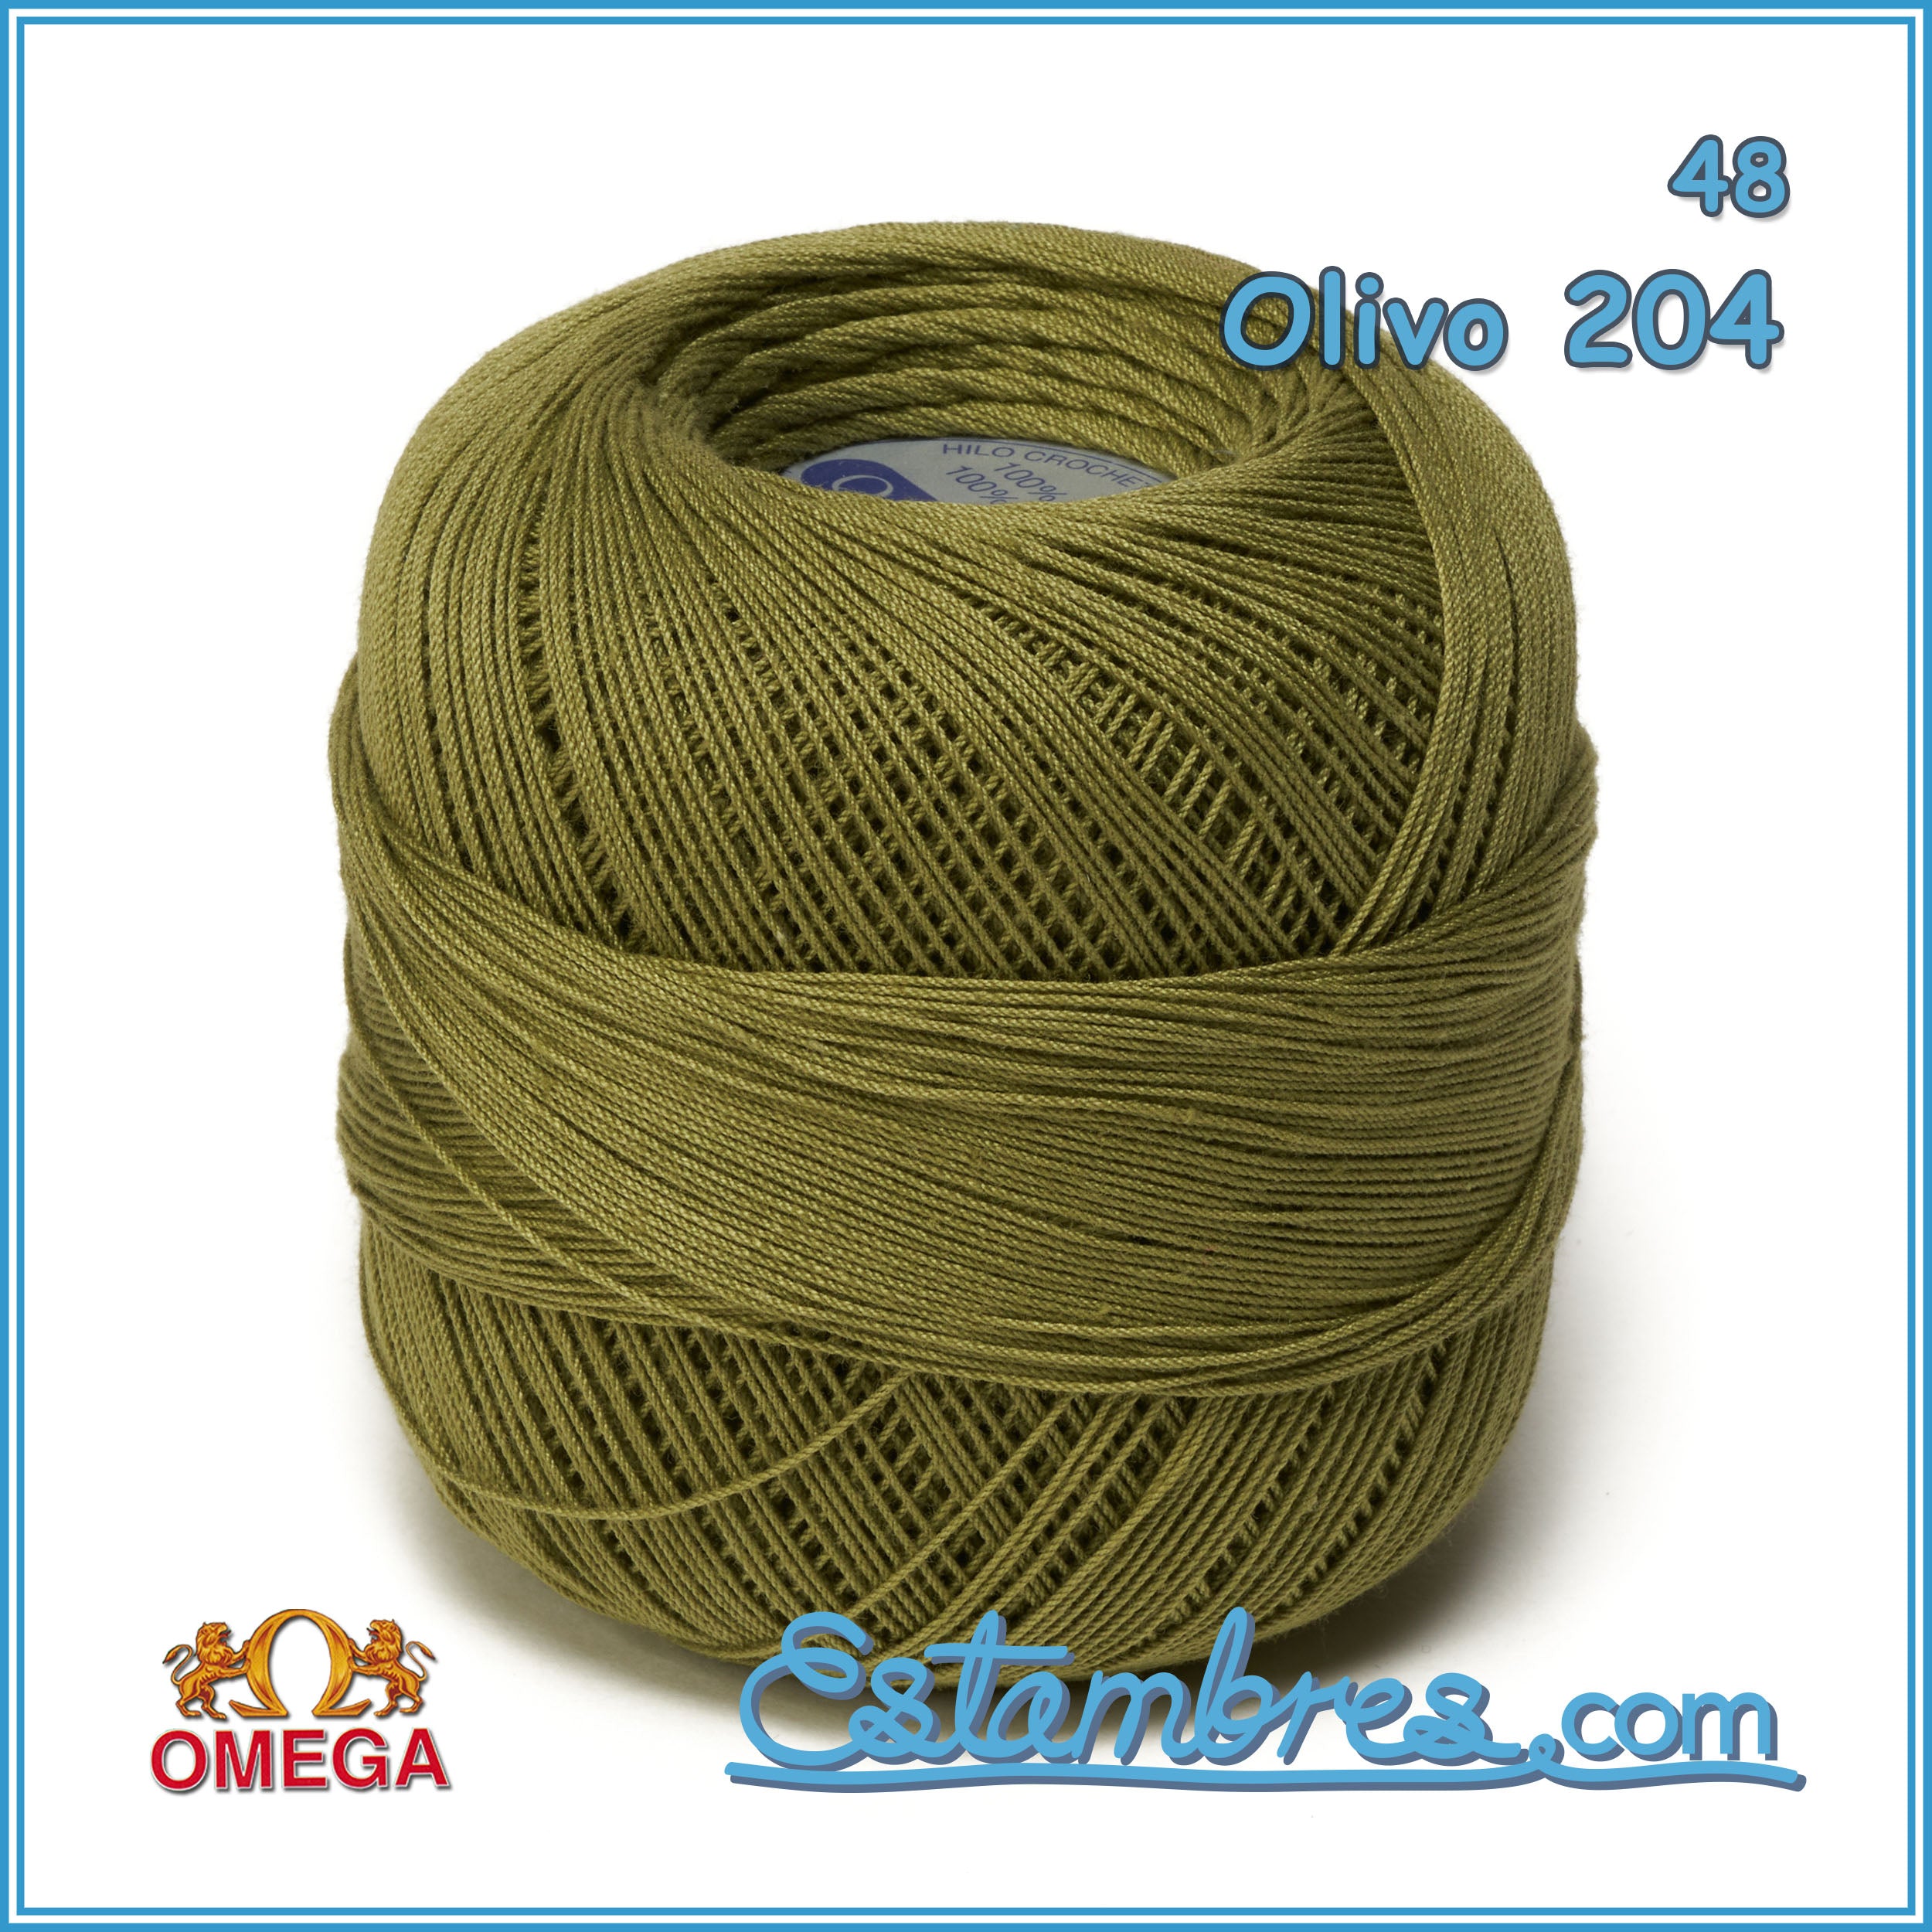 Hilos Omega - Hilo CROCHET OMEGA para tejer con ganchillo. En números, 5,  10, 20, 30, 40, 50 y 60, fabricado con los mejores algodones. 100% algodón  mercerizado.